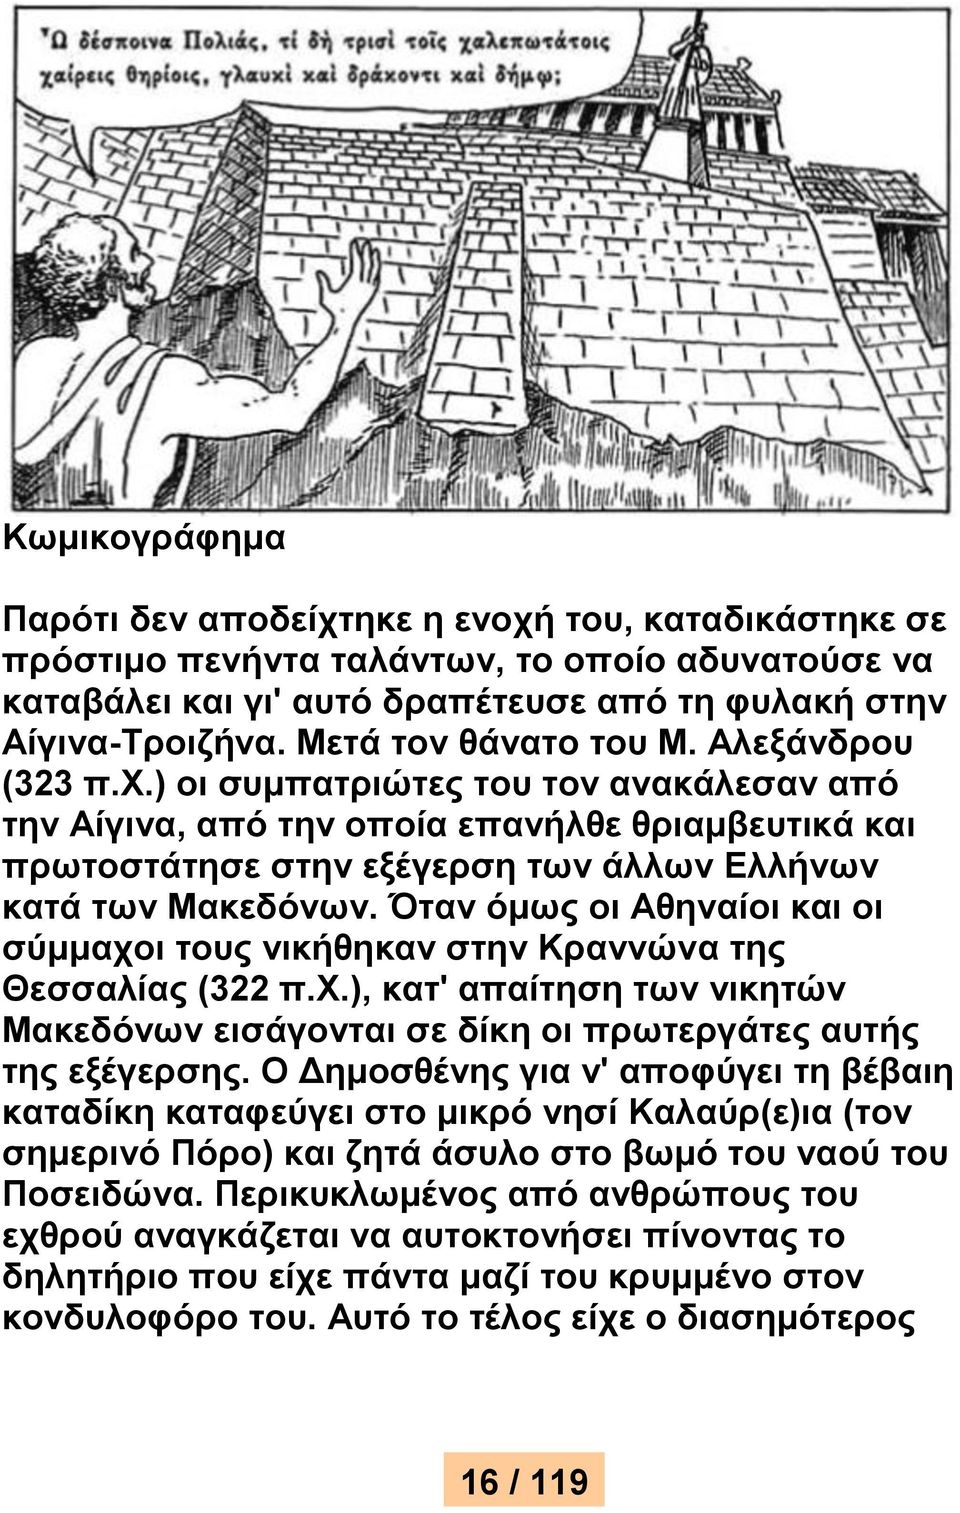 Όταν όμως οι Αθηναίοι και οι σύμμαχοι τους νικήθηκαν στην Κραννώνα της Θεσσαλίας (322 π.χ.), κατ' απαίτηση των νικητών Μακεδόνων εισάγονται σε δίκη οι πρωτεργάτες αυτής της εξέγερσης.